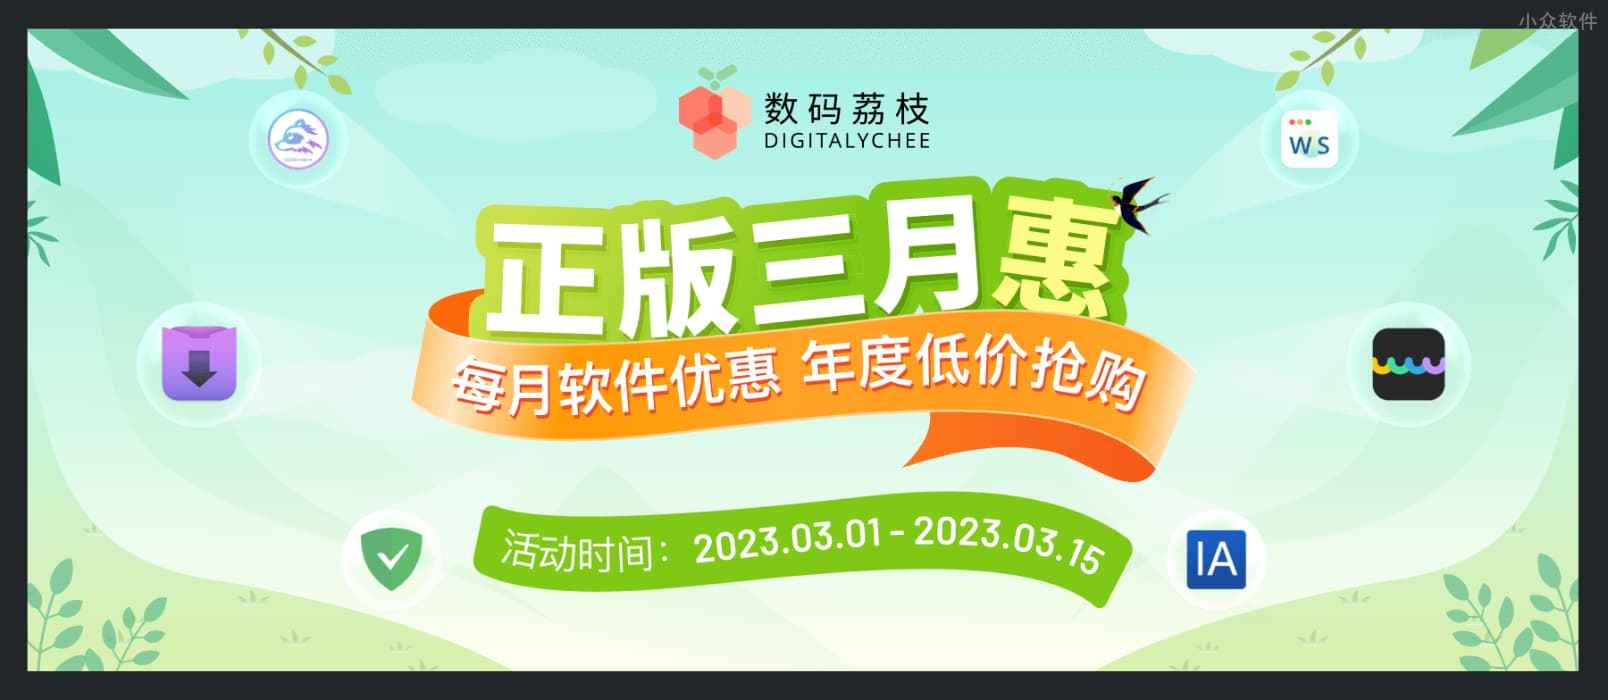 数码荔枝 3 月正版软件优惠：Downie、UPDF、Office 等 7 折起